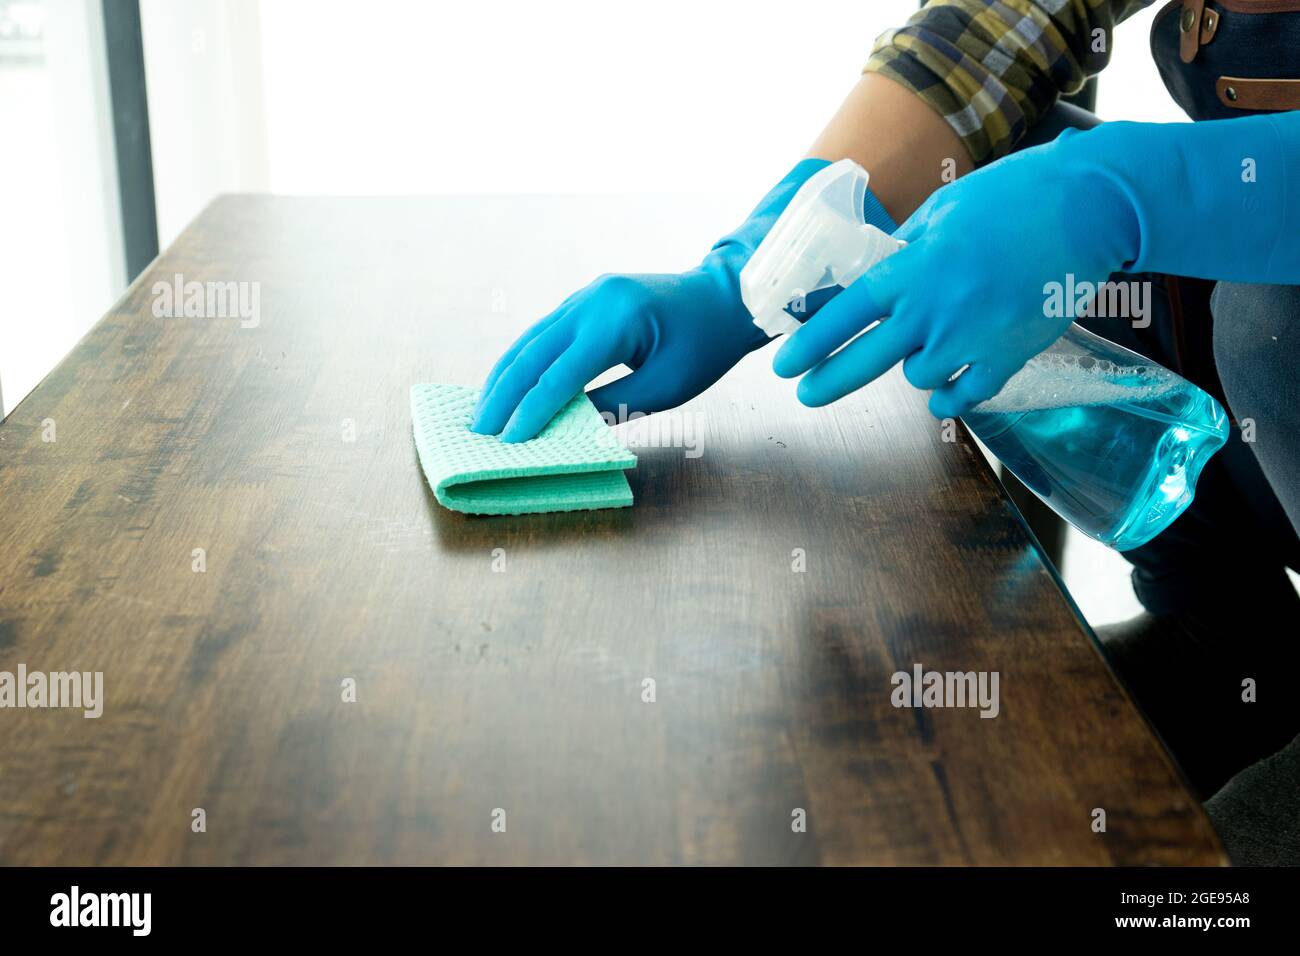 Le personnel nettoie le plan d'examen à l'aide d'un chiffon et d'un désinfectant pour le nettoyage et la prévention des maladies Covid-19. Banque D'Images